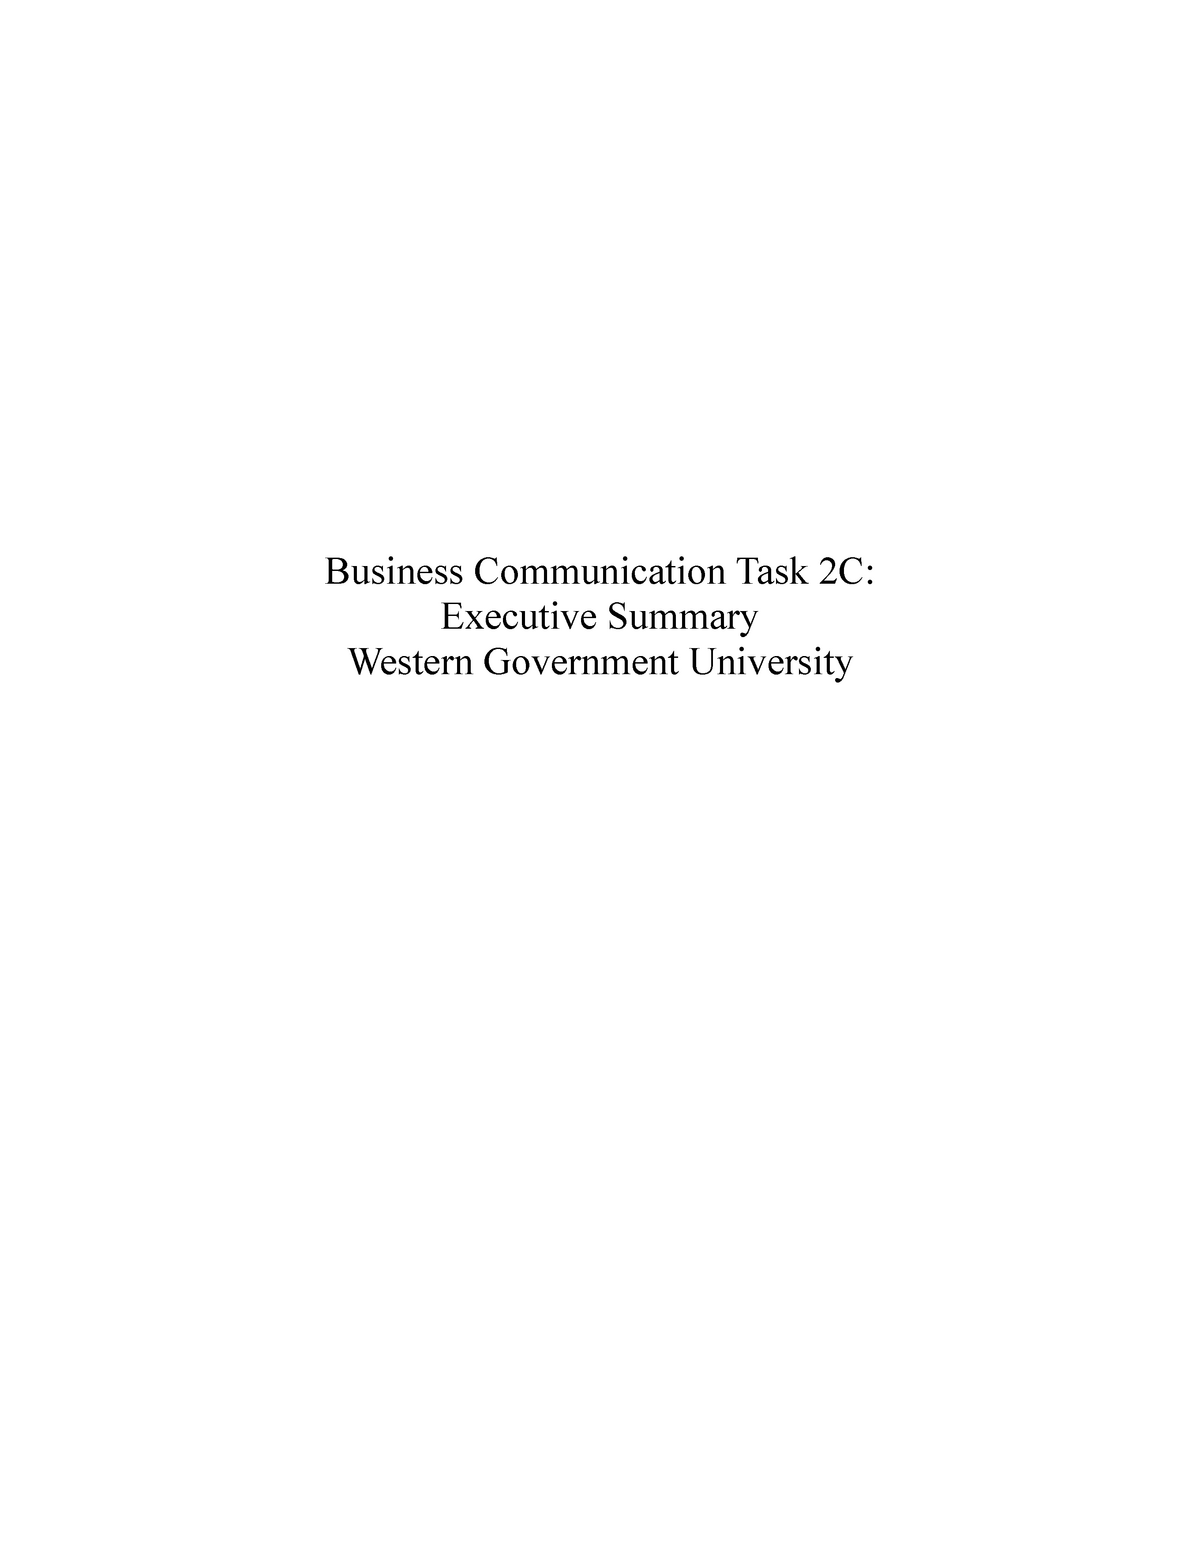 wgu business communication task 2 executive summary